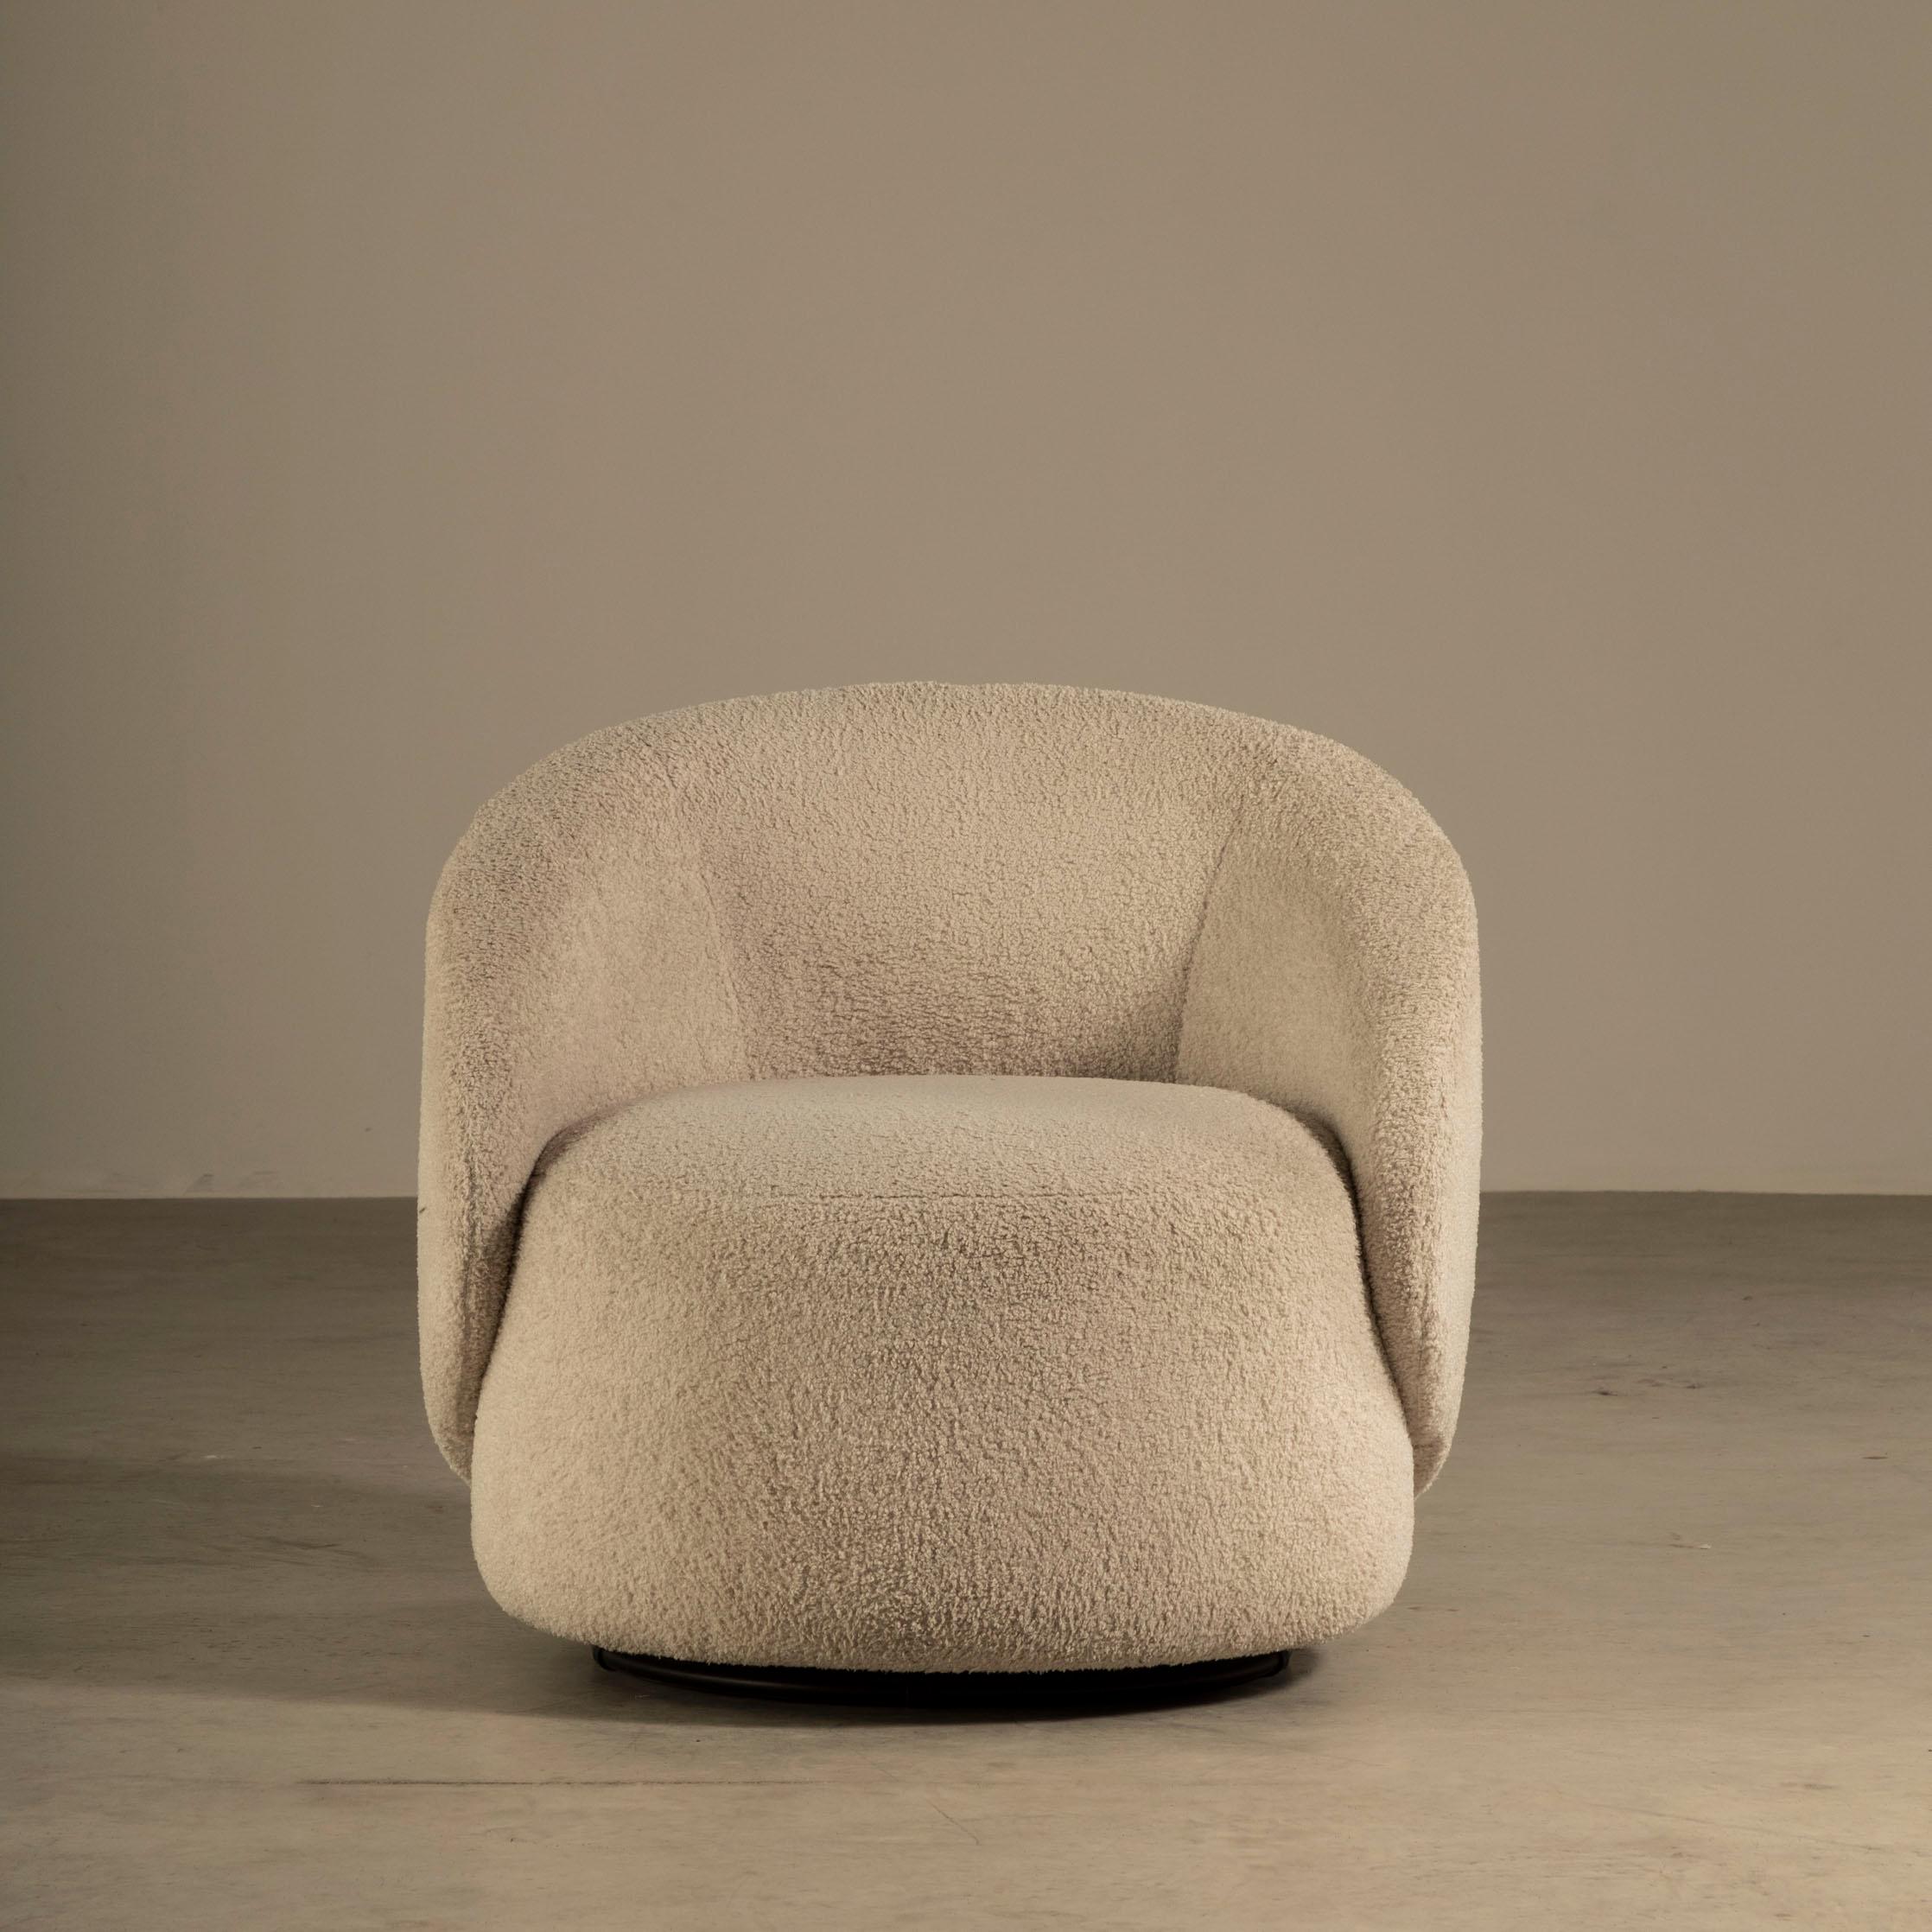 Der Sessel Orixá ist ein Meisterwerk des Designs, das den einzigartigen Stil und die Kreativität von Ronald Sasson zum Ausdruck bringt. Der Sessel ist eine Verkörperung von Komfort und Ästhetik, mit einem skulpturalen Design, das mit einem